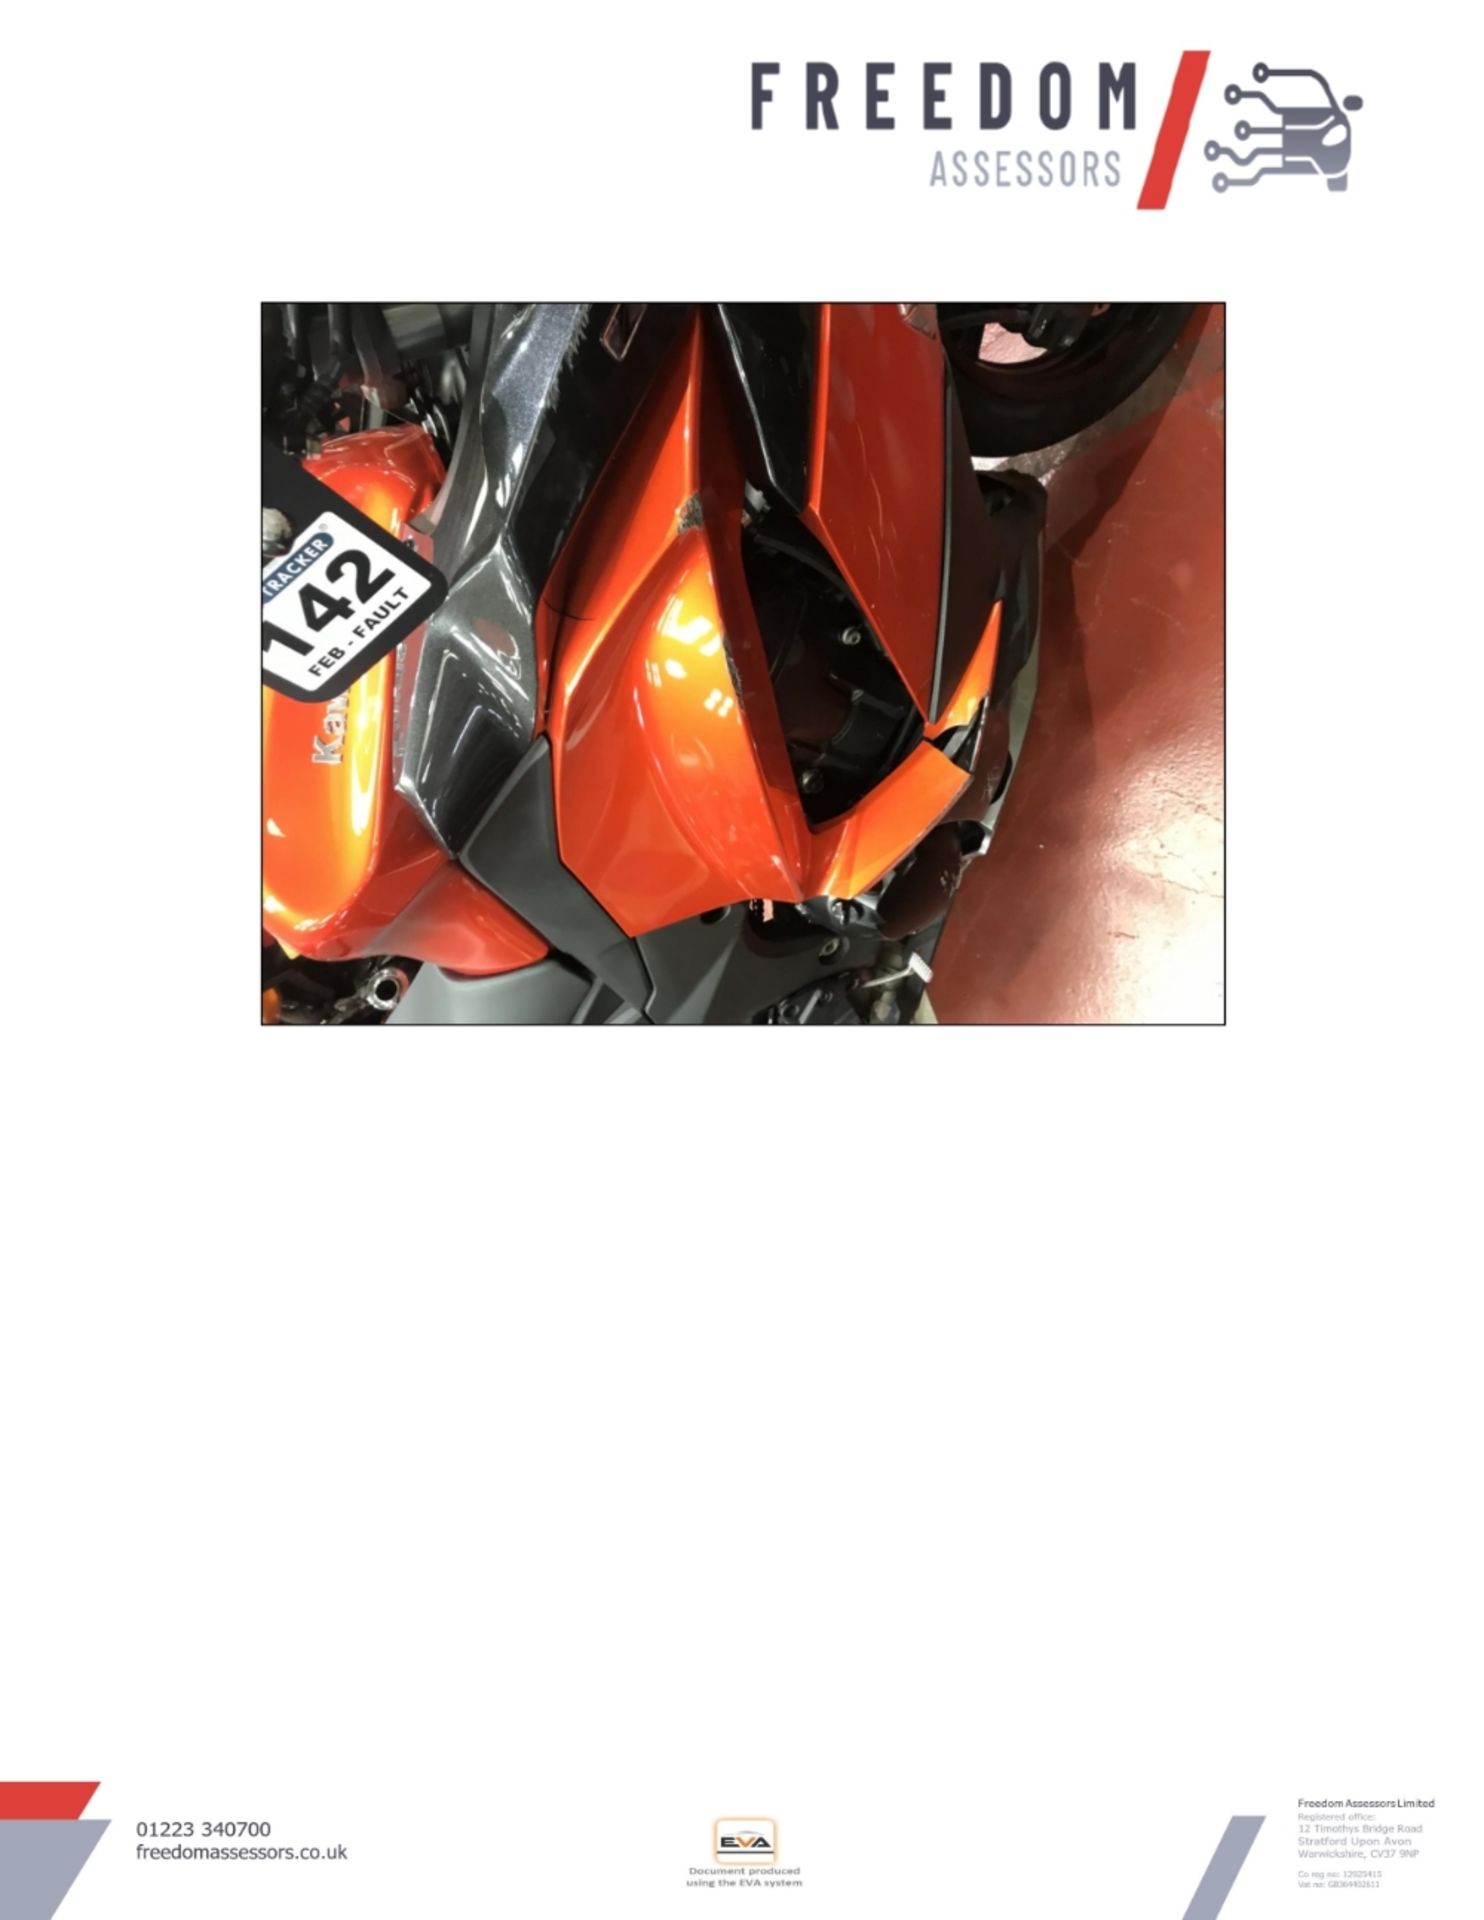 FM17 WCJ Kawasaki Z1000SX WHF Motorcycle - Image 17 of 21